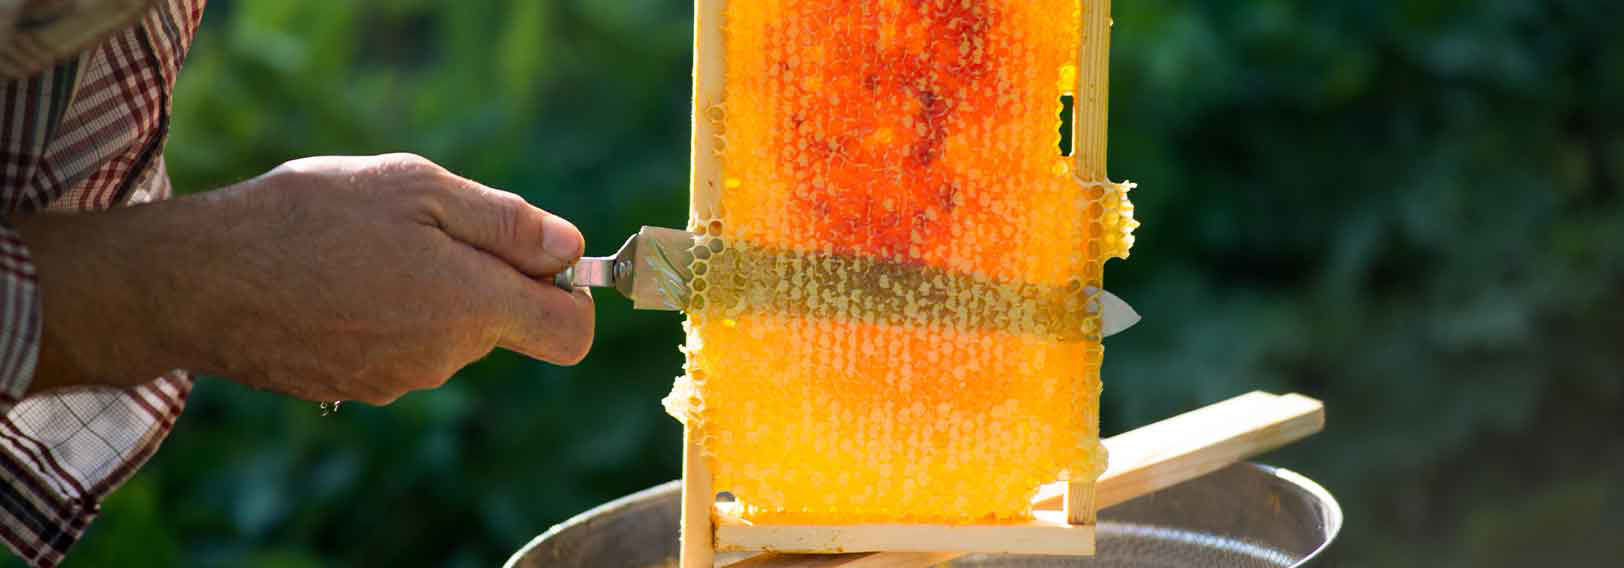 beekeeper with honey comb